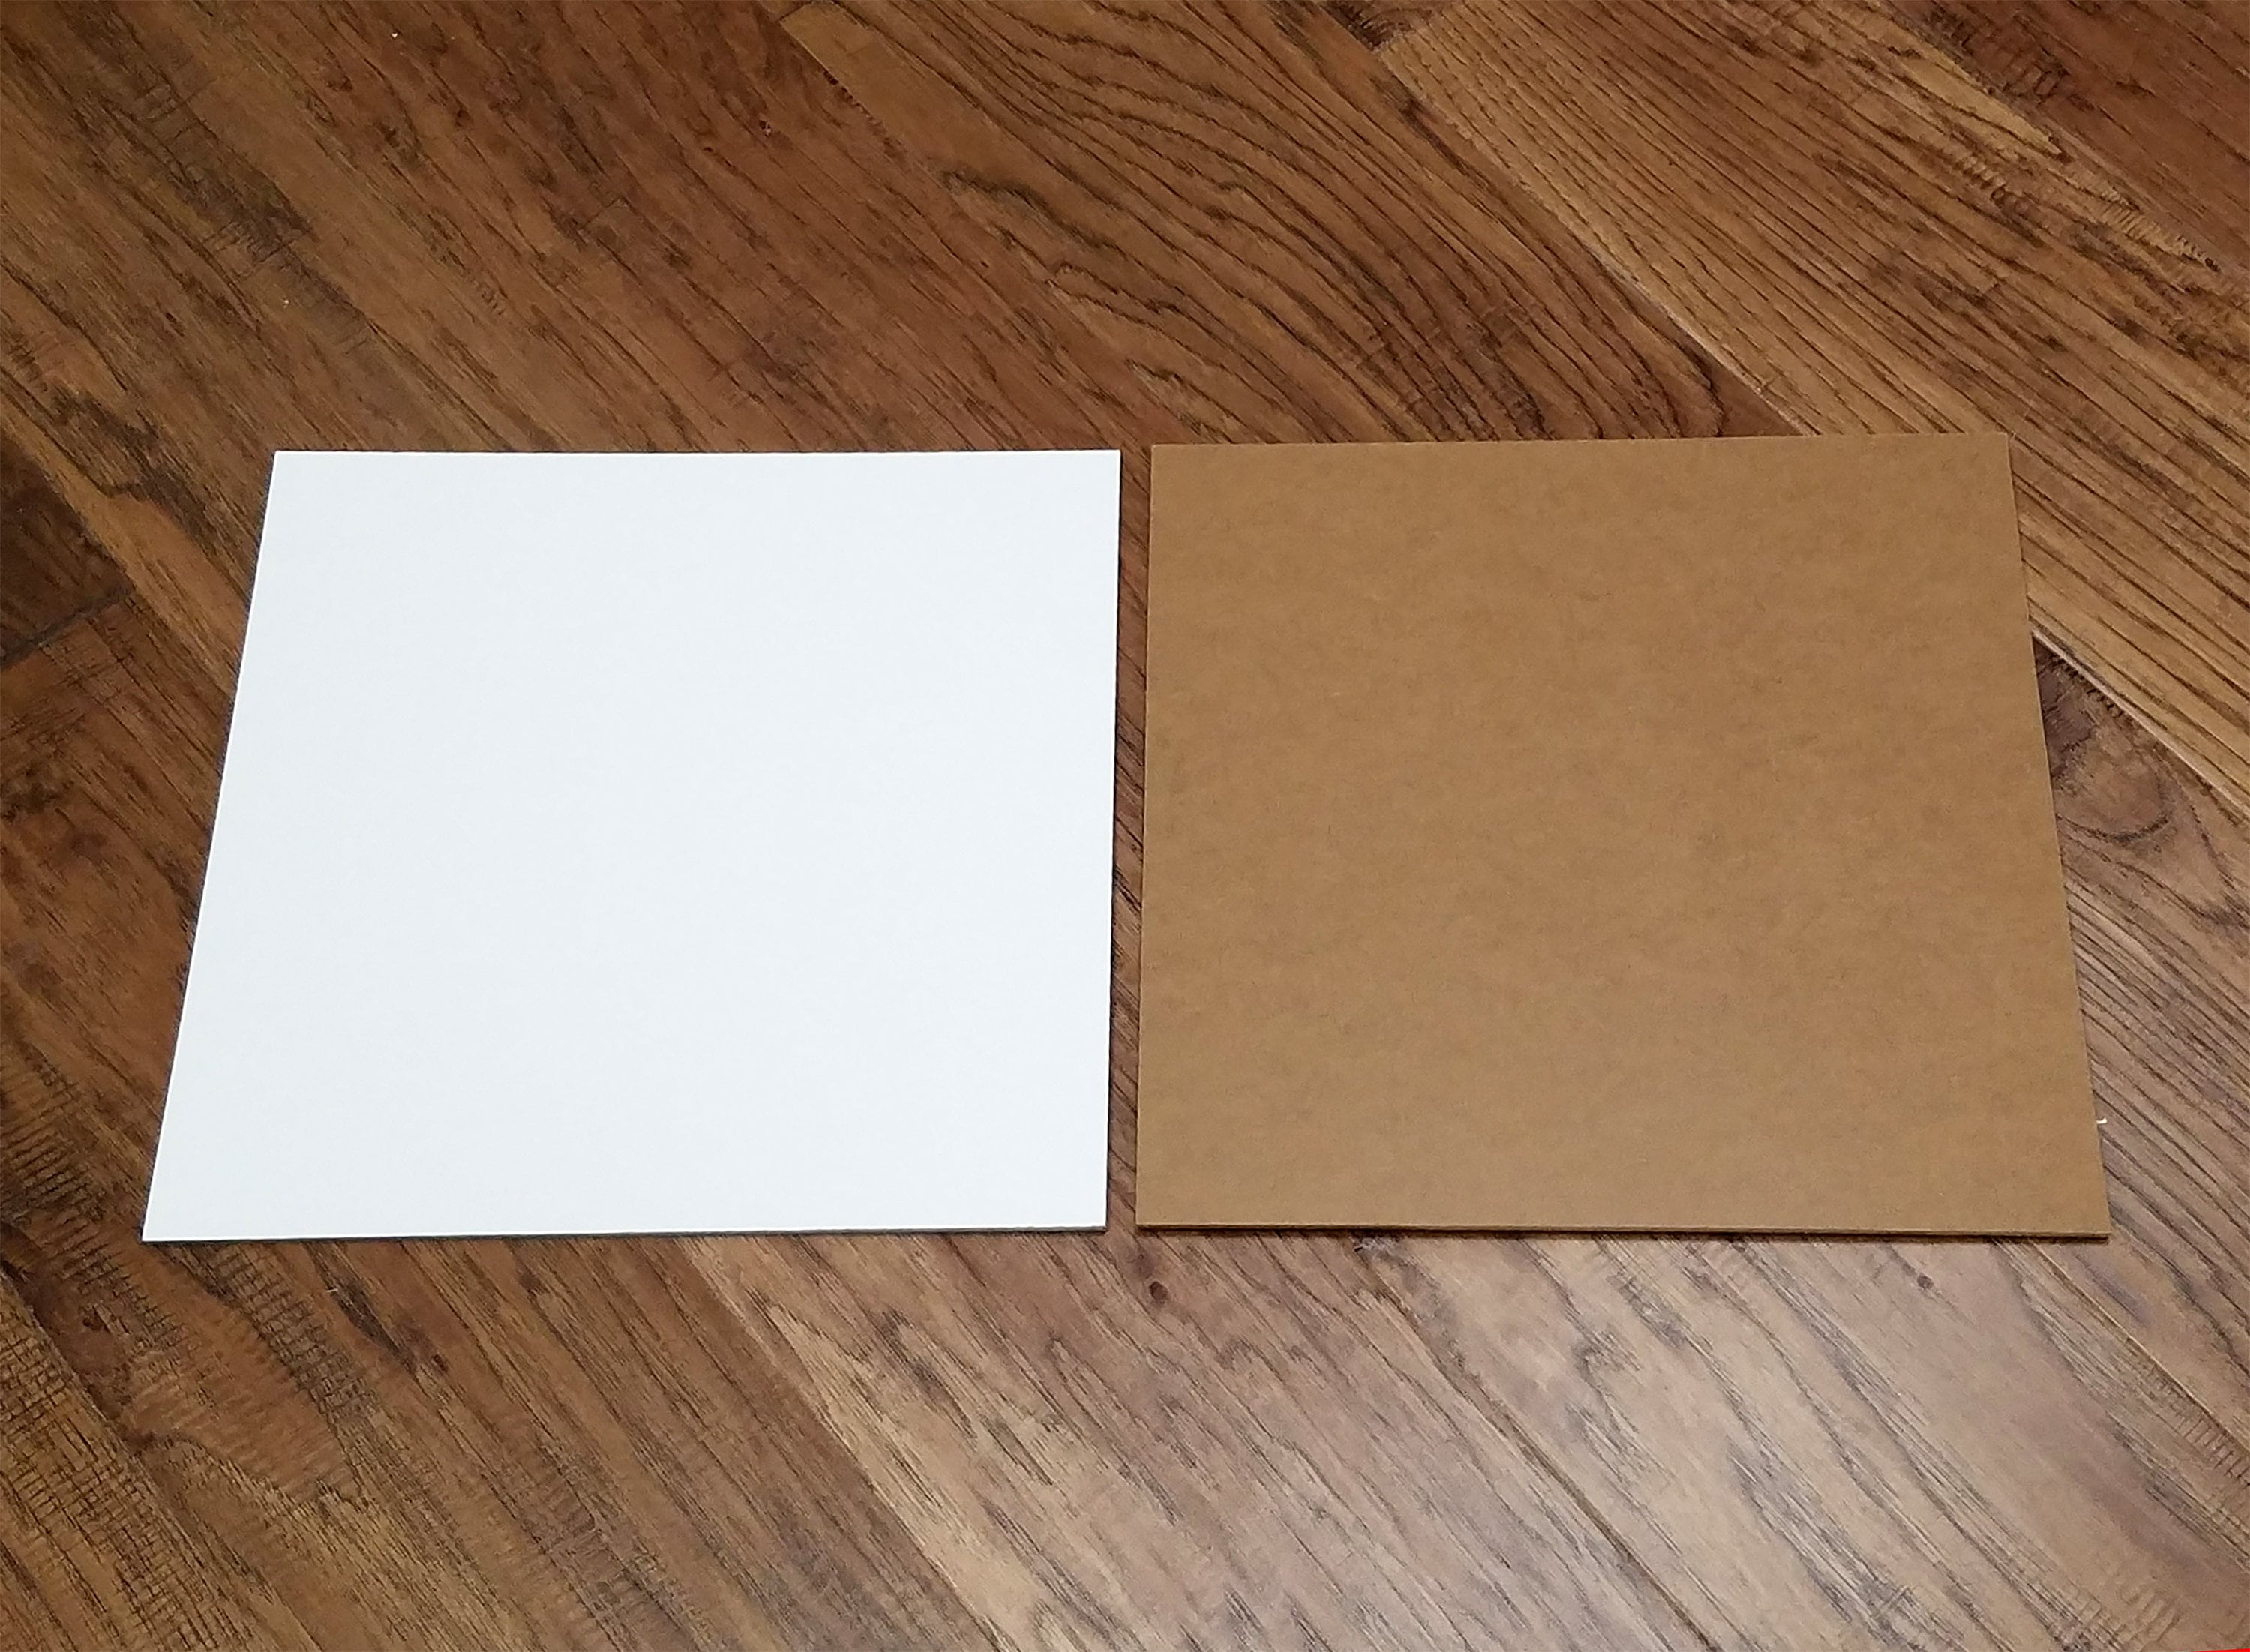 White Hardboard MDF, 1 Side (1/8 in x 30 in x 120 in)